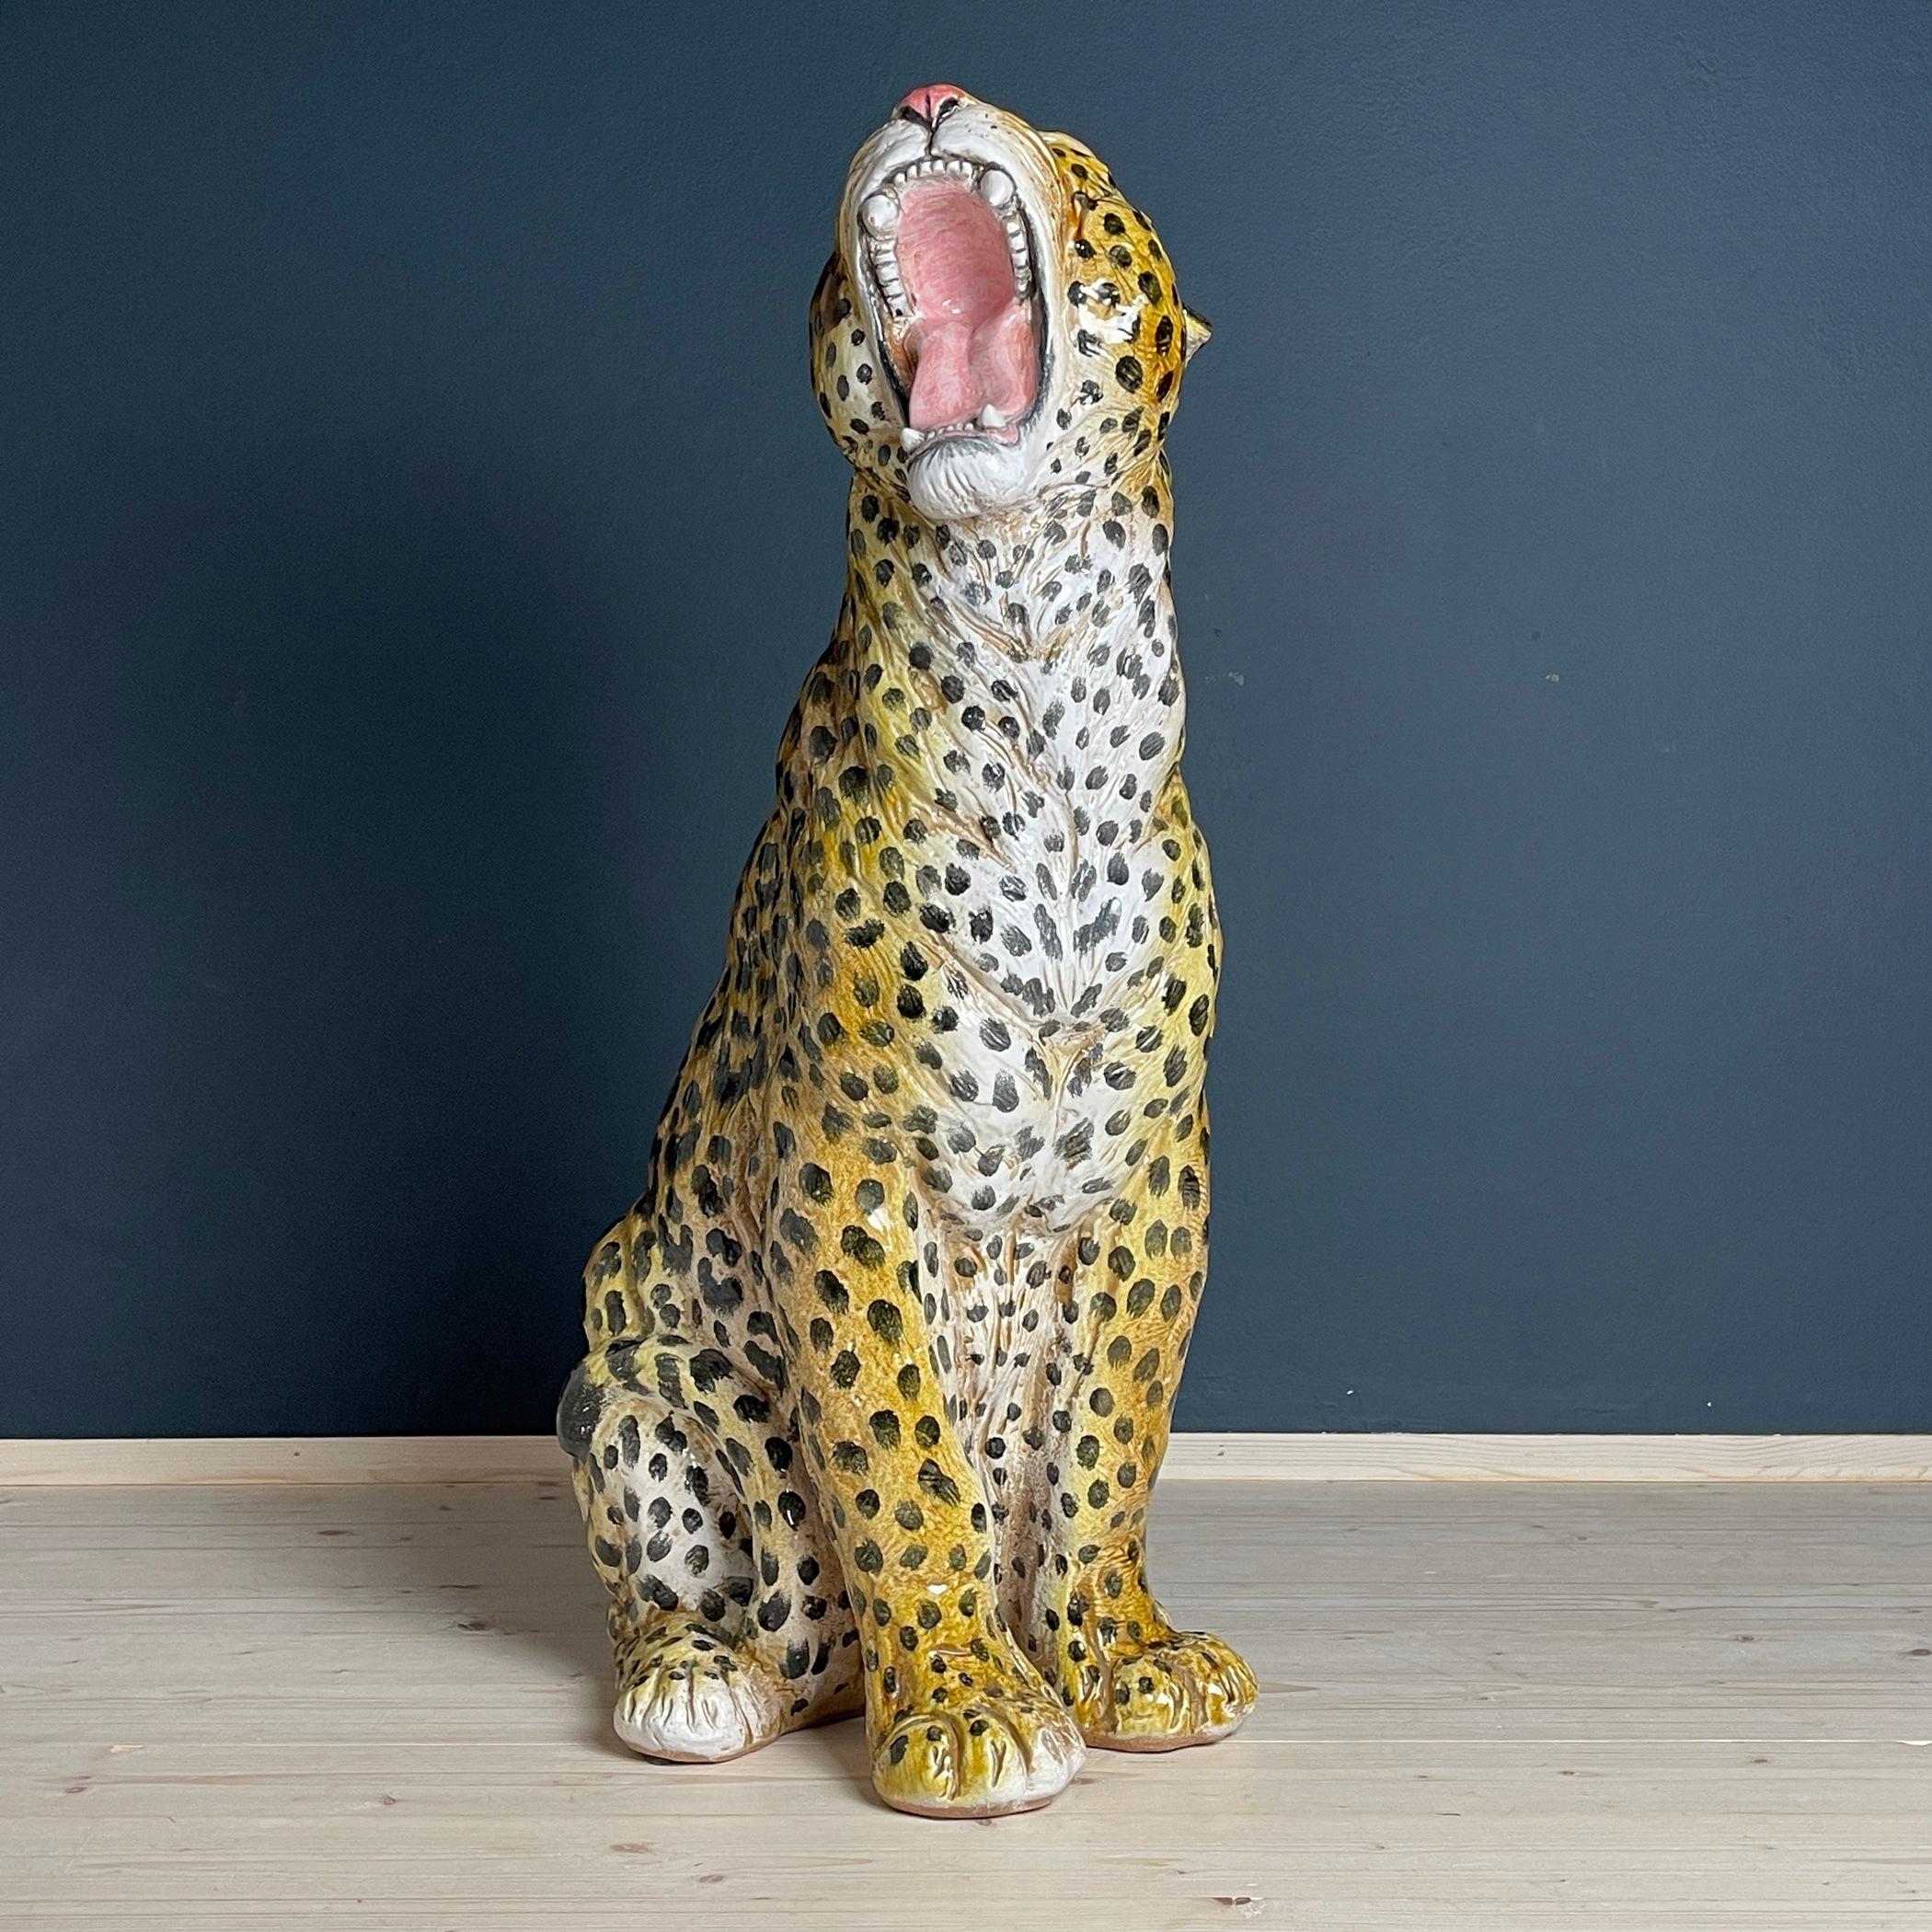 Lassen Sie sich von dieser großen Keramikskulptur, die einen prächtigen Leoparden darstellt, verführen. Dieses in den 1960er Jahren in Italien gefertigte Meisterwerk ist ein Beweis für die geschickten Hände italienischer Kunsthandwerker. Diese